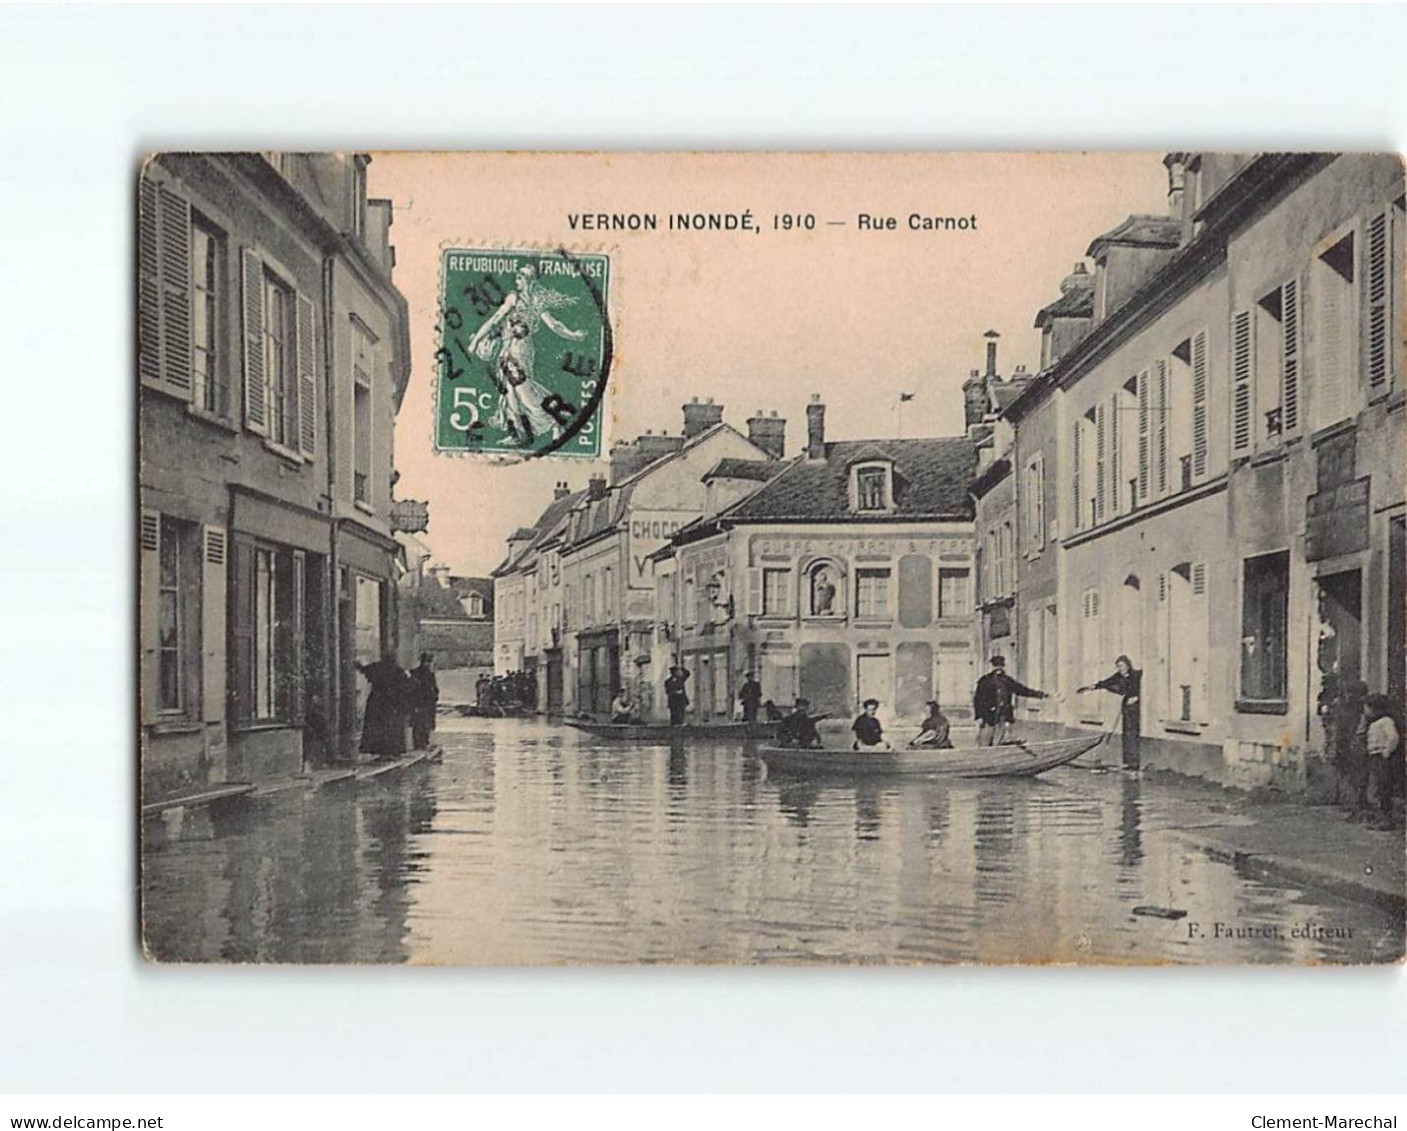 VERNON : Inondation De 1910, Rue Carnot - état - Vernon